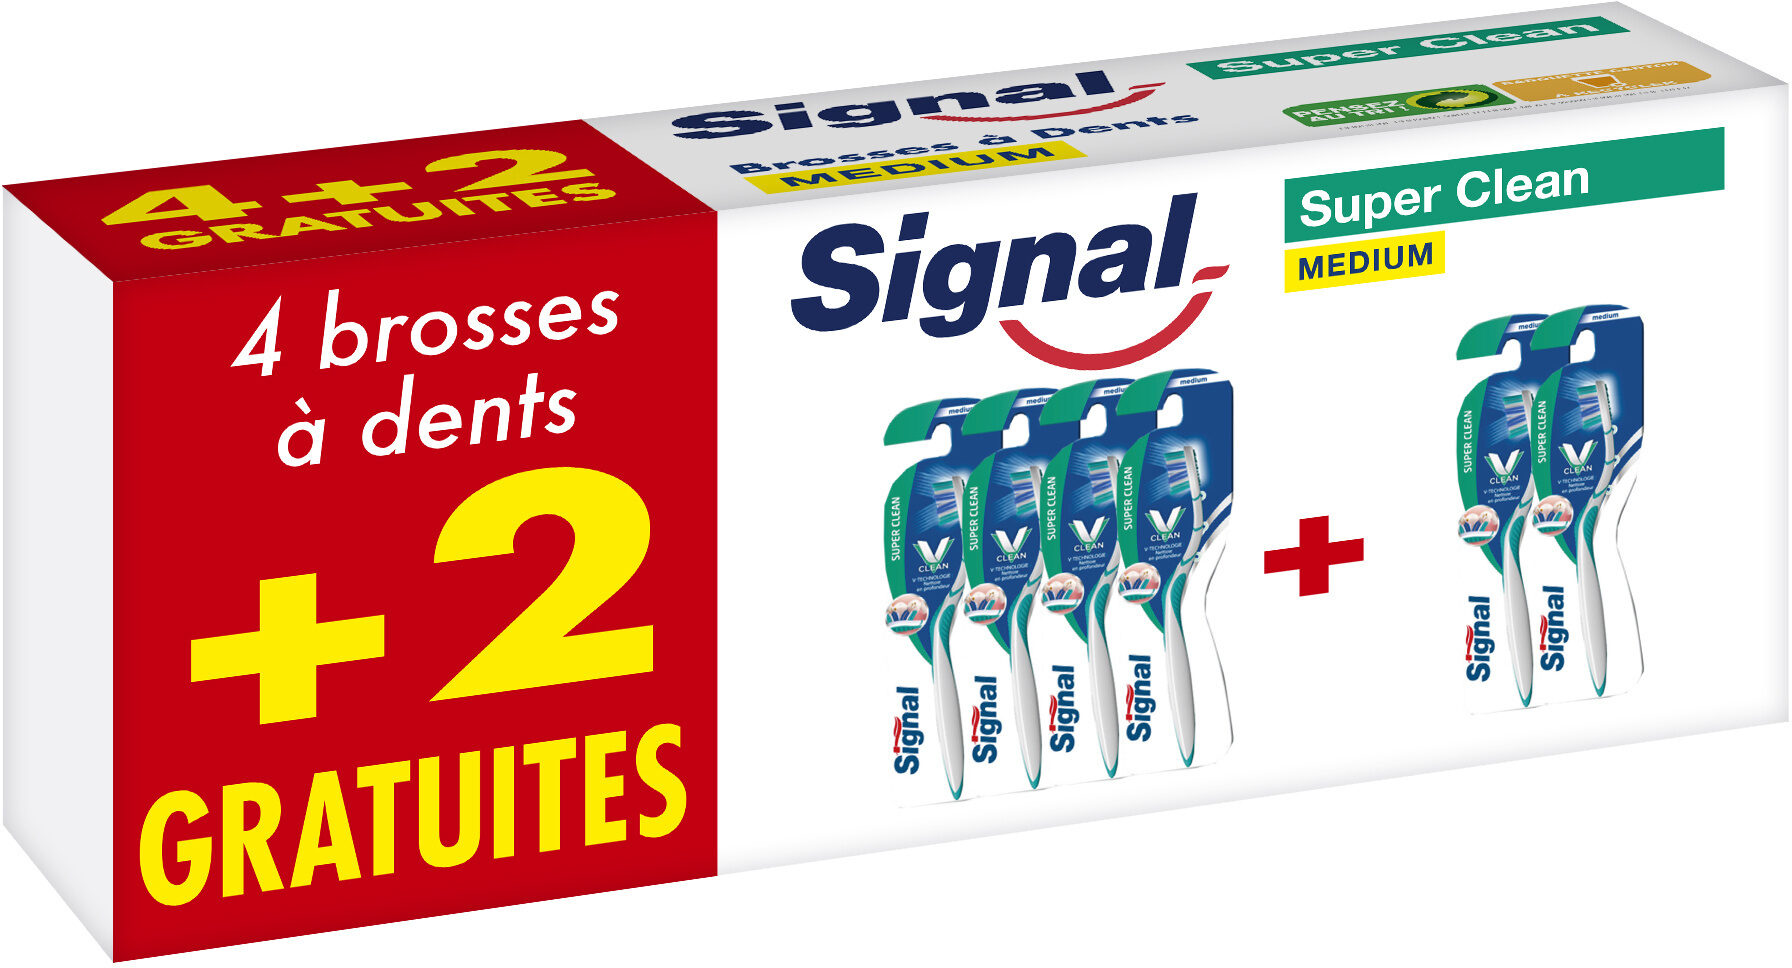 Signal Brosse à Dents Super Clean Medium Lot de 6(4+2 Gratuits) - Product - fr